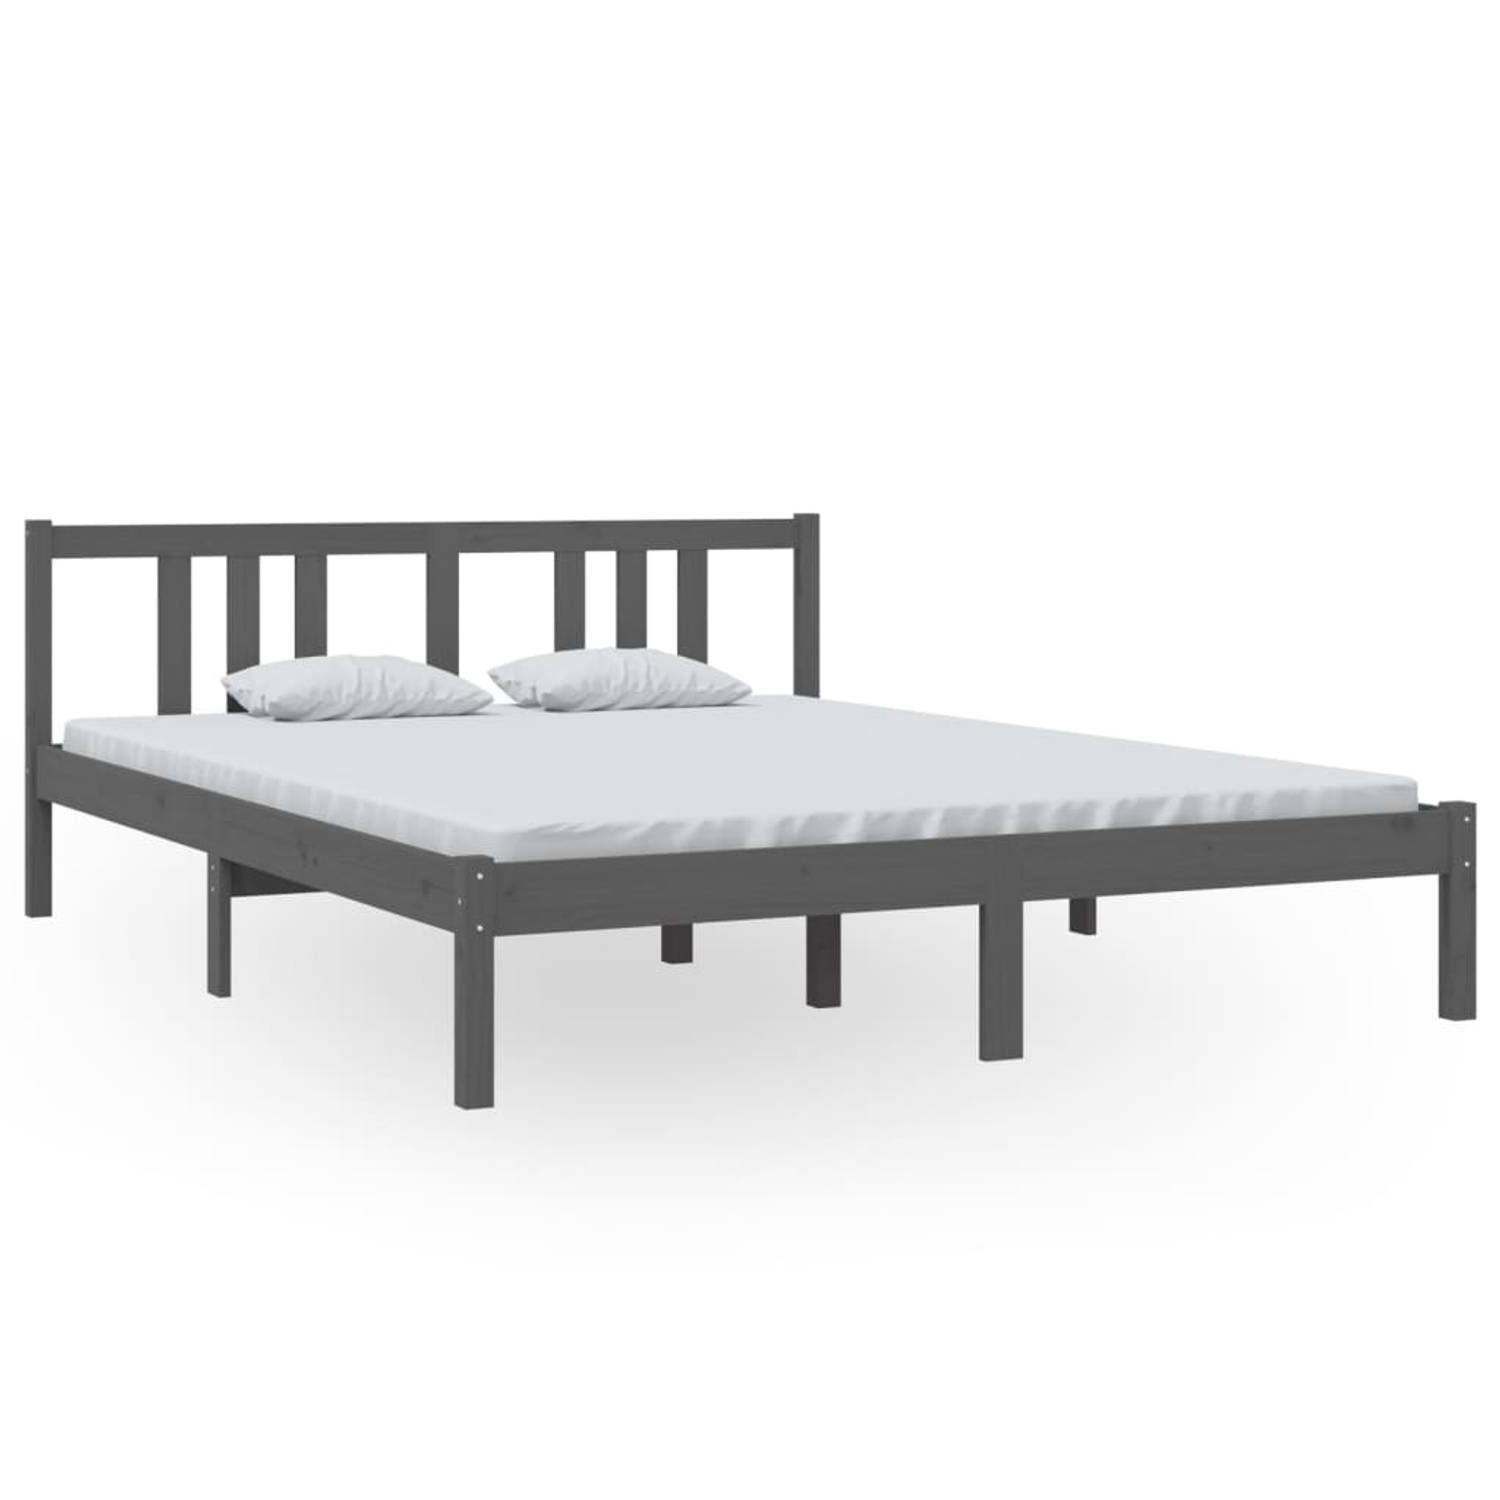 The Living Store Bedframe massief hout grijs 150x200 cm 5FT King Size - Bedframe - Bedframes - Bed - Bedbodem - Ledikant - Bed Frame - Massief Houten Bedframe - Slaapmeubel - Tweep